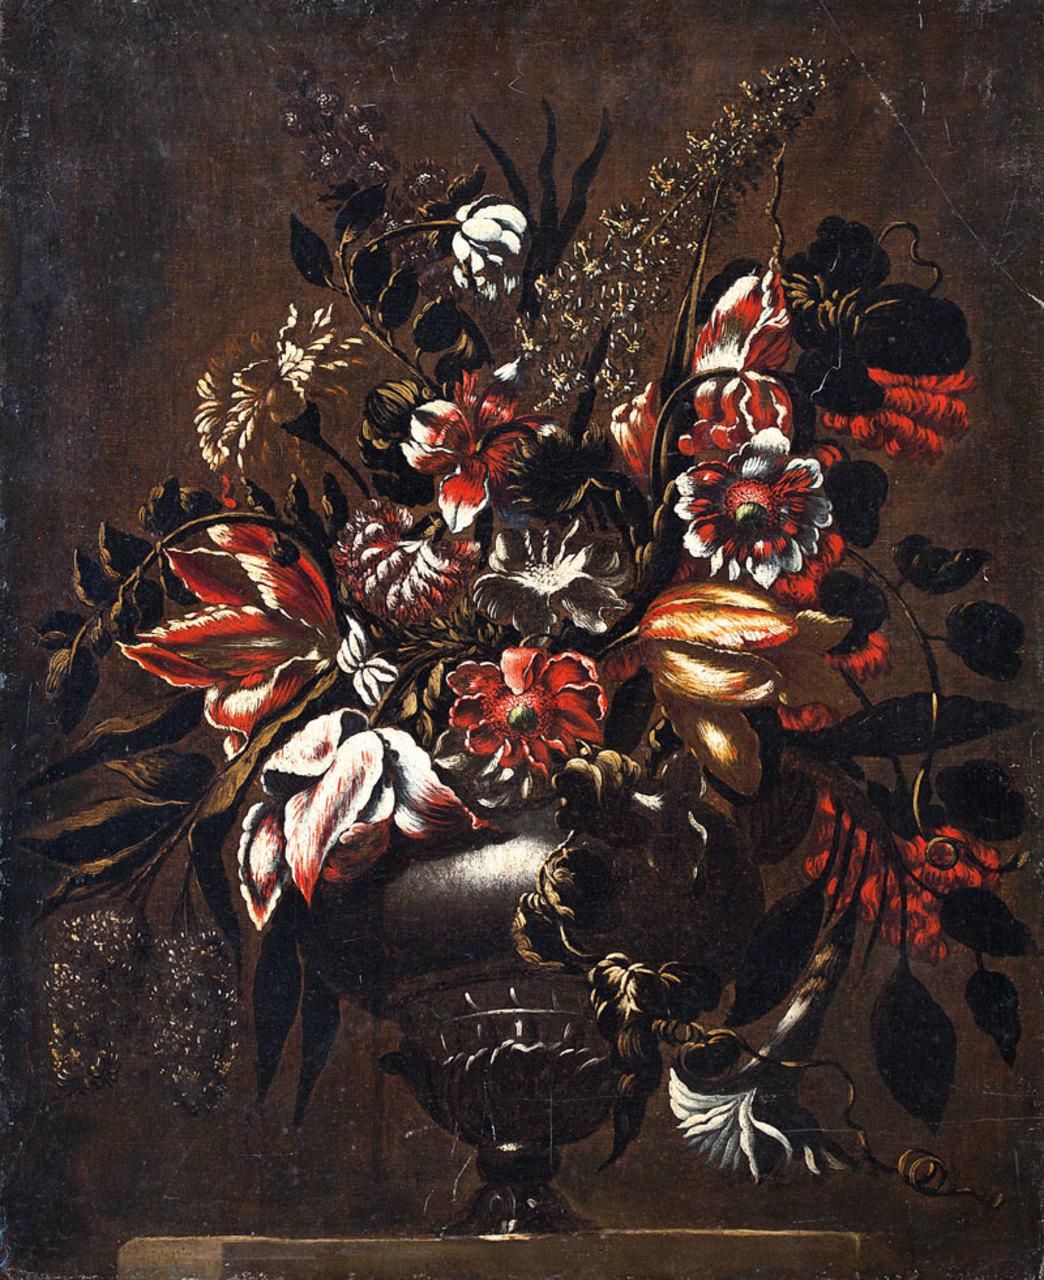 ESCUELA ESPAÑOLA, Fns. S. XVII Vase mit Blumen
Öl auf Leinwand
75 x 62 cm.